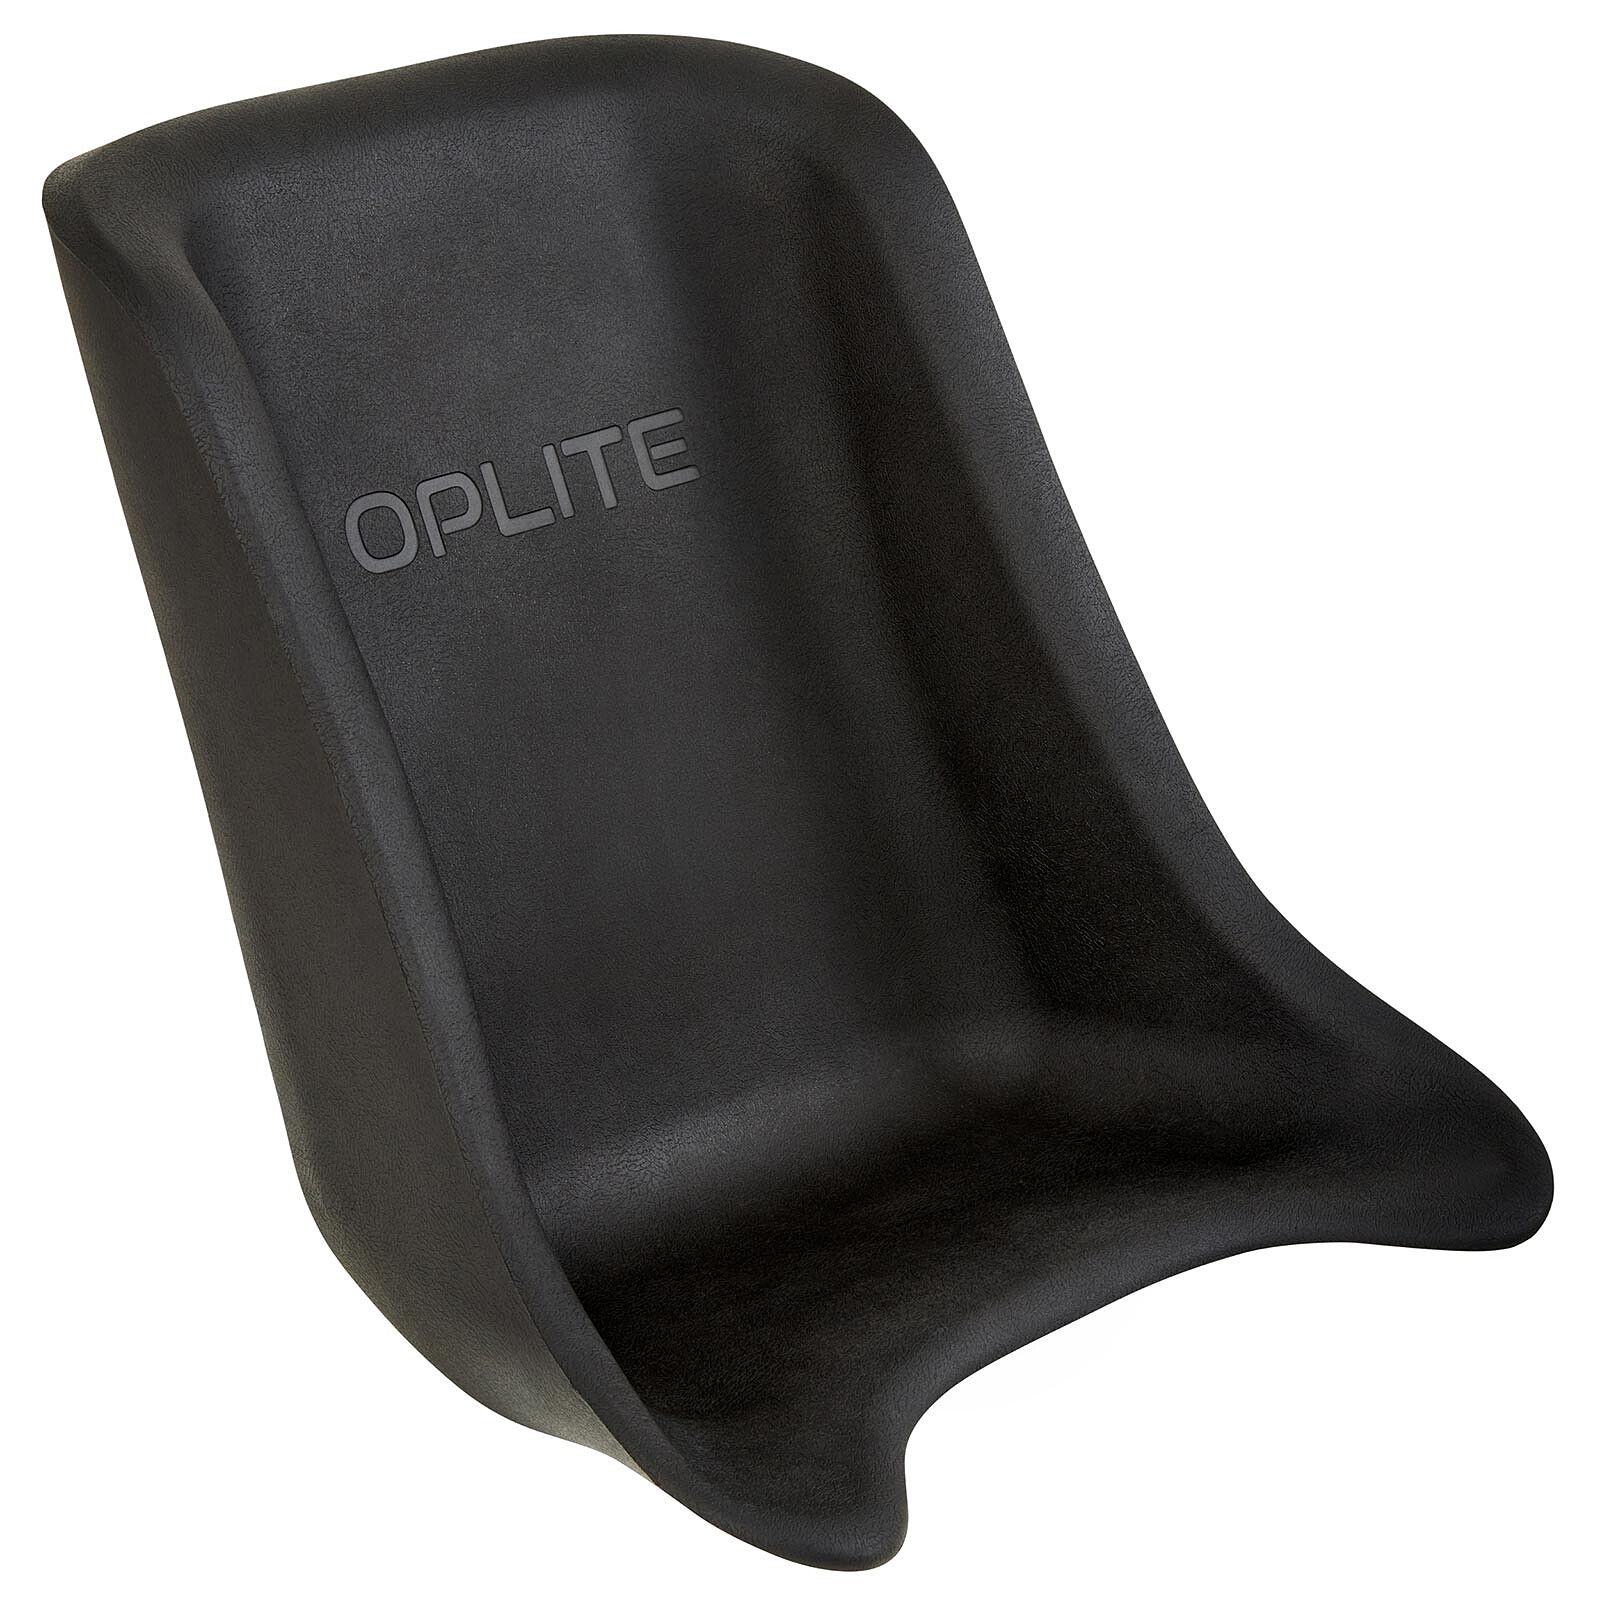 Oplite - NitroKart - Family Pack 